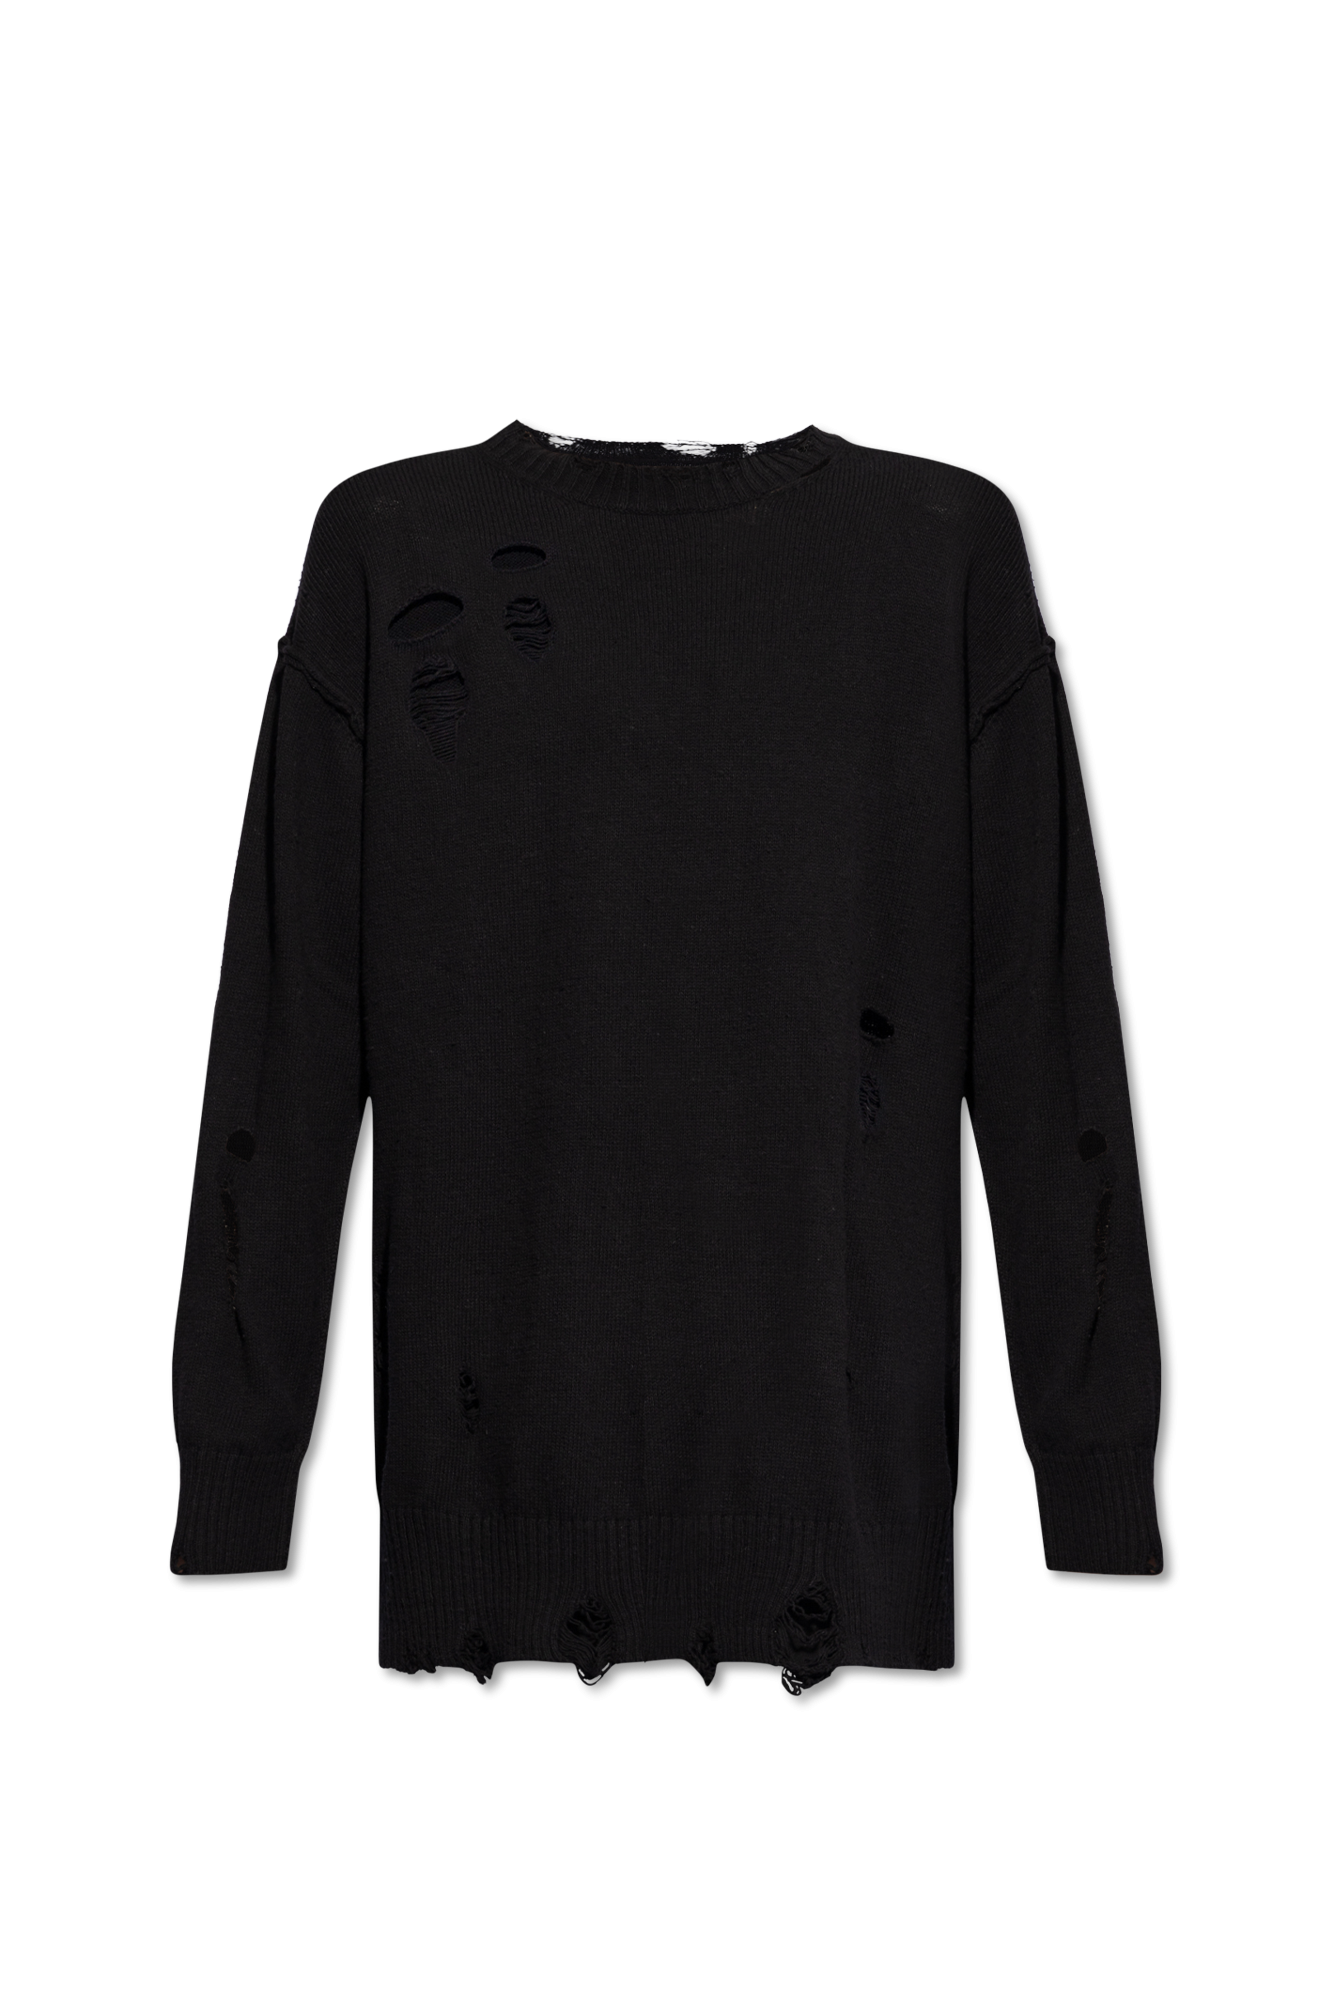 Yohji Yamamoto Sweater with a vintage effect